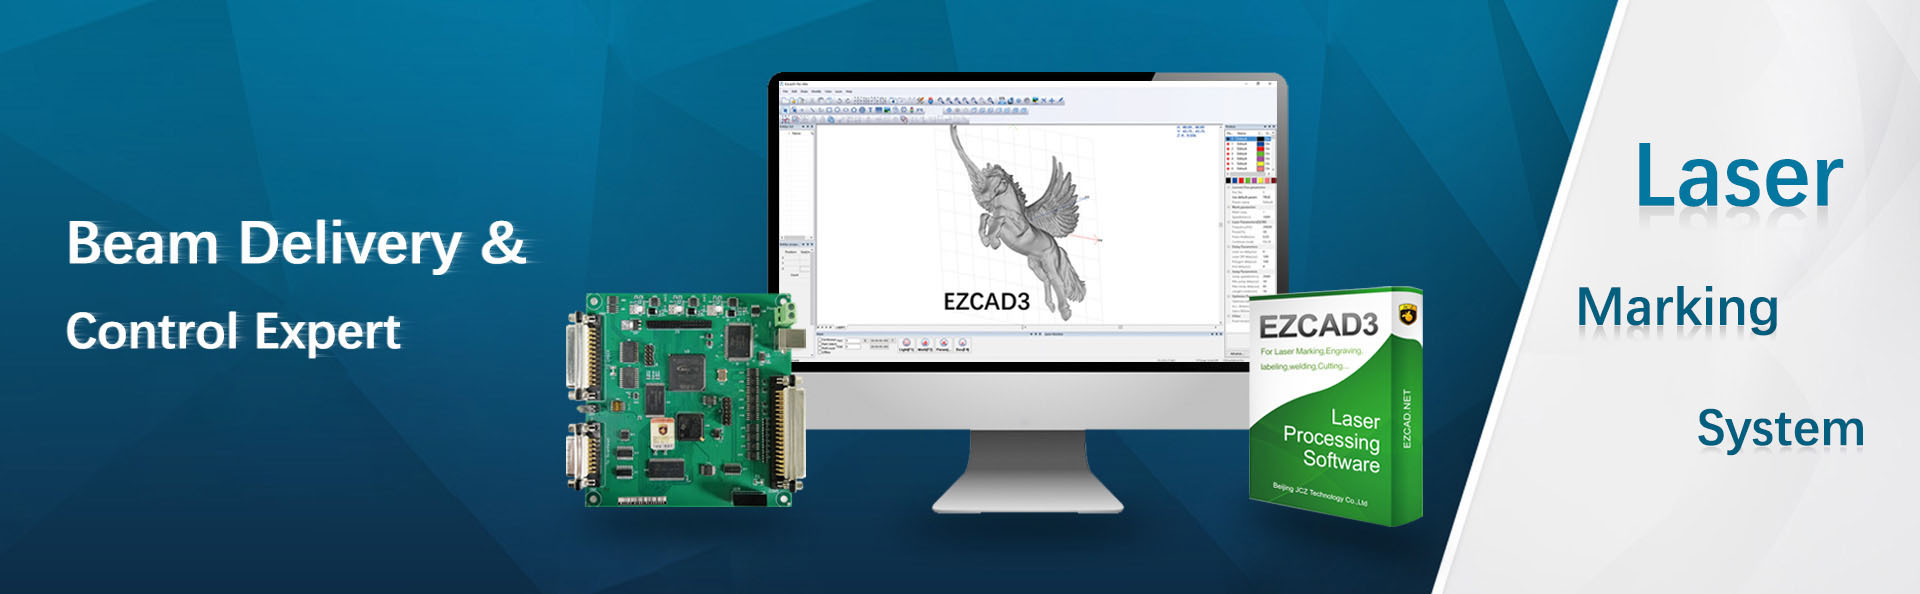 EZCAD3 सफ्टवेयर